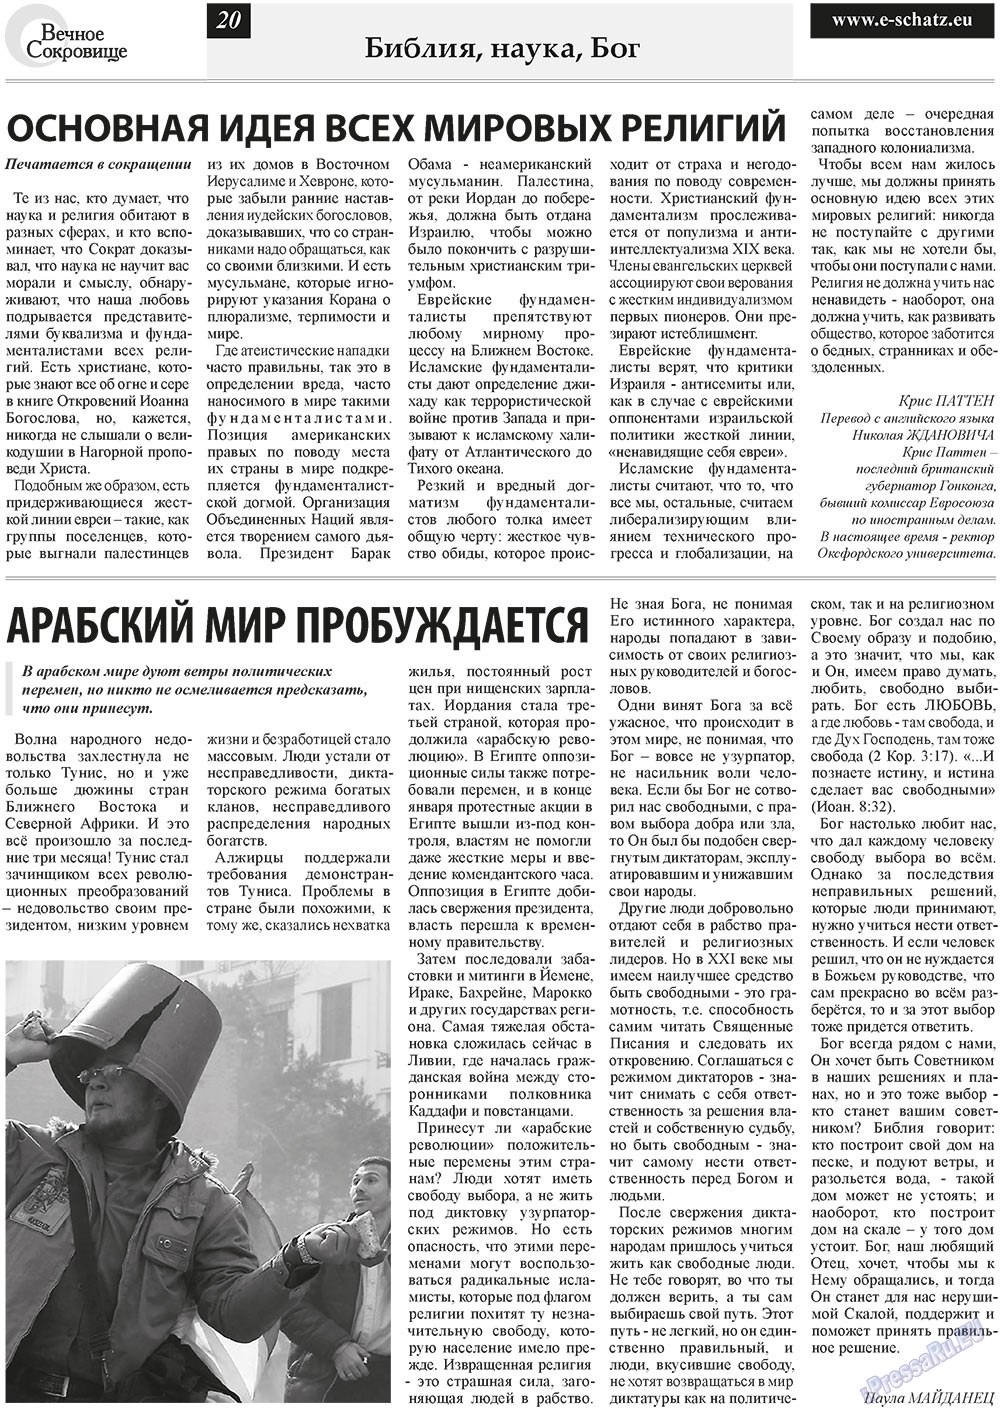 Вечное сокровище (газета). 2011 год, номер 2, стр. 20